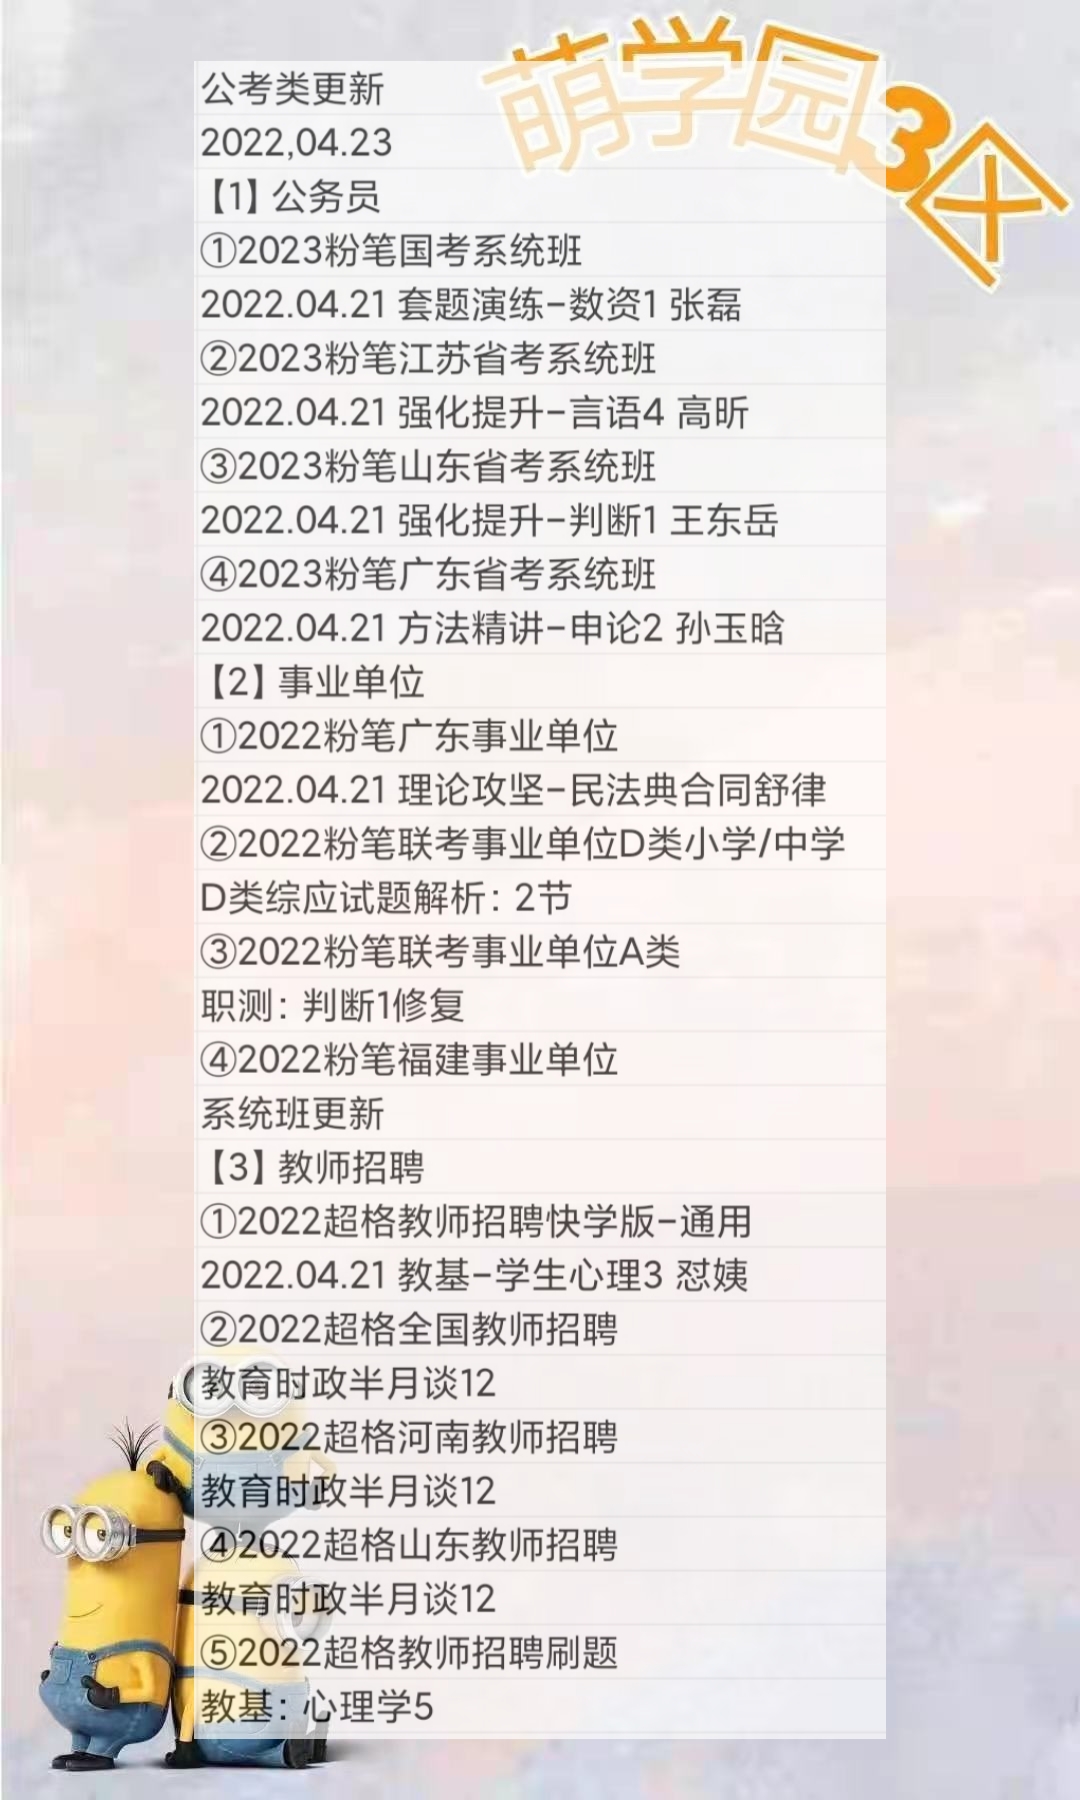 萌学院区04月23号更新 公务员 事业单位22 教师招聘